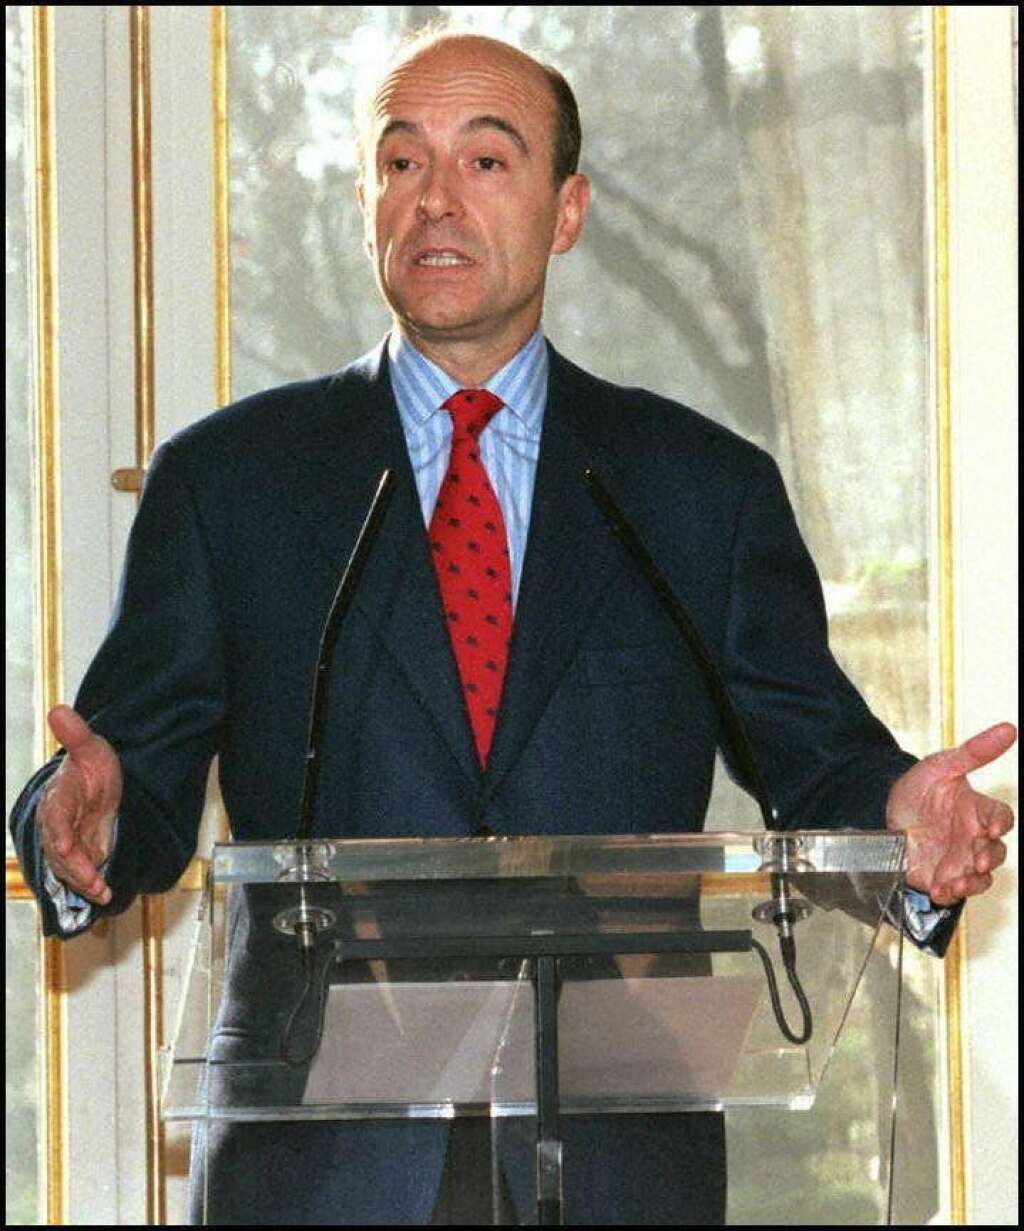 Alain Juppé (1995-1997), le plus féminin - <p>Elu président de la République en 1995, Jacques Chirac nomme son bras droit de toujours, celui qu'il a un jour qualifié de "meilleur d'entre nous" à Matignon. Mais dès l'automne, des millions de personnes sont dans la rue pour dénoncer son projet de réforme des retraites. Il quitte son poste après la dissolution de 1997.</p>  <p>Dans son premier gouvernement, 12 femmes sont nommées ministres, un record pour l'époque. Mais les "Juppettes" ne résisteront pas au remaniement qui intervient quelques mois plus tard. </p>